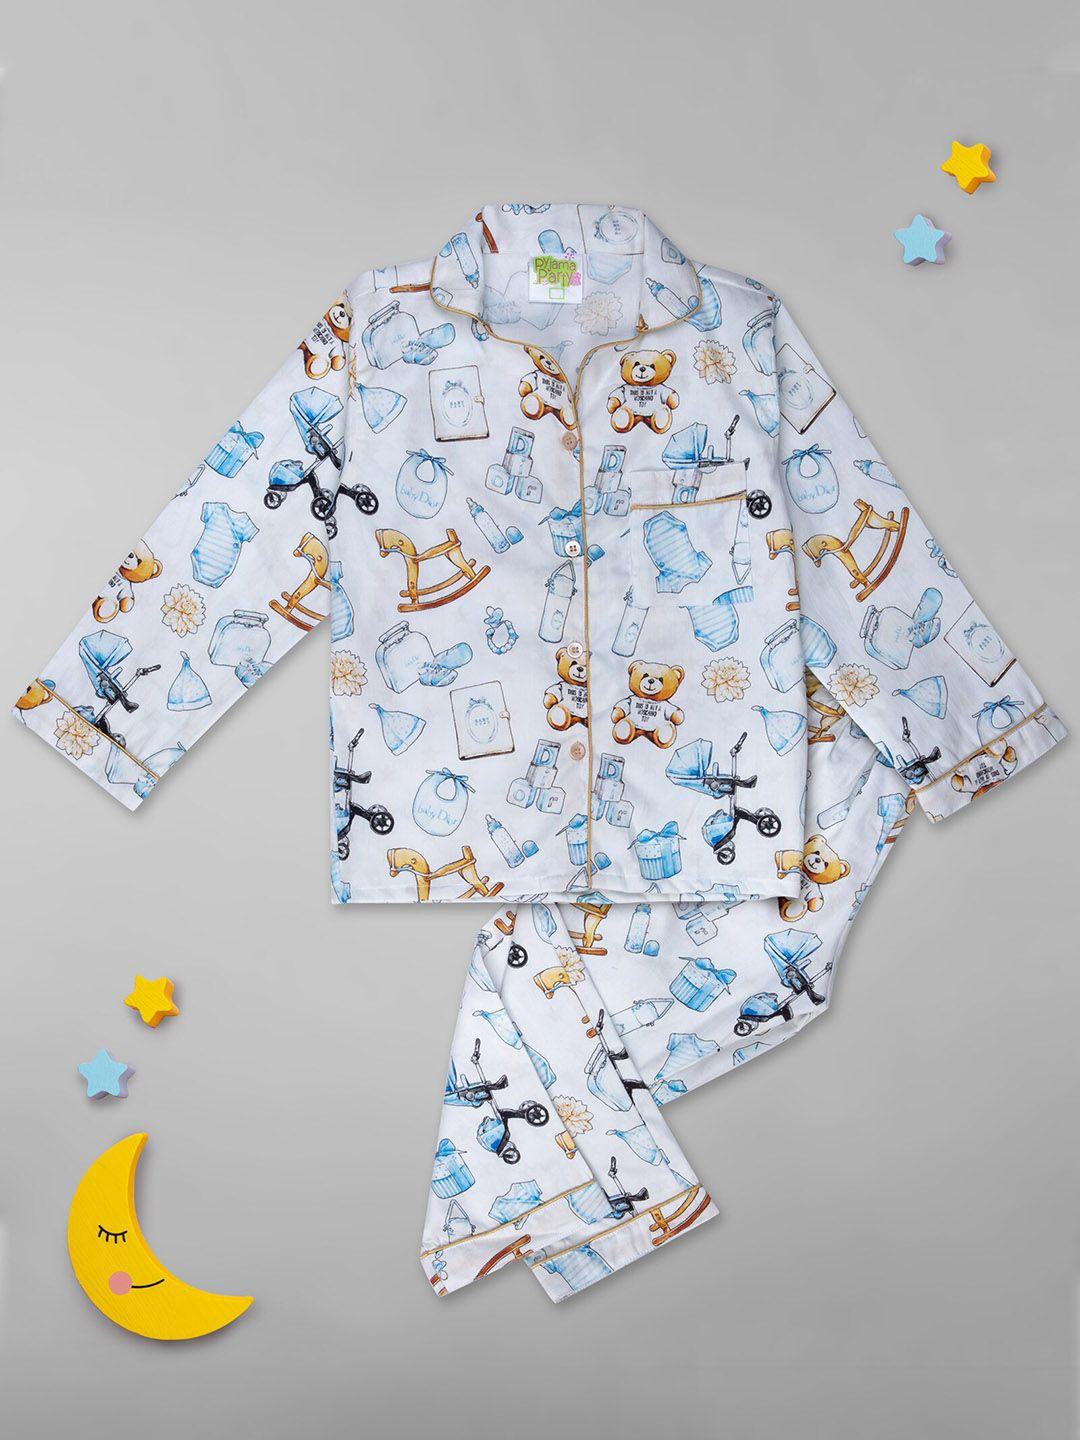 pyjama party unisex kids white & blue printed night suit